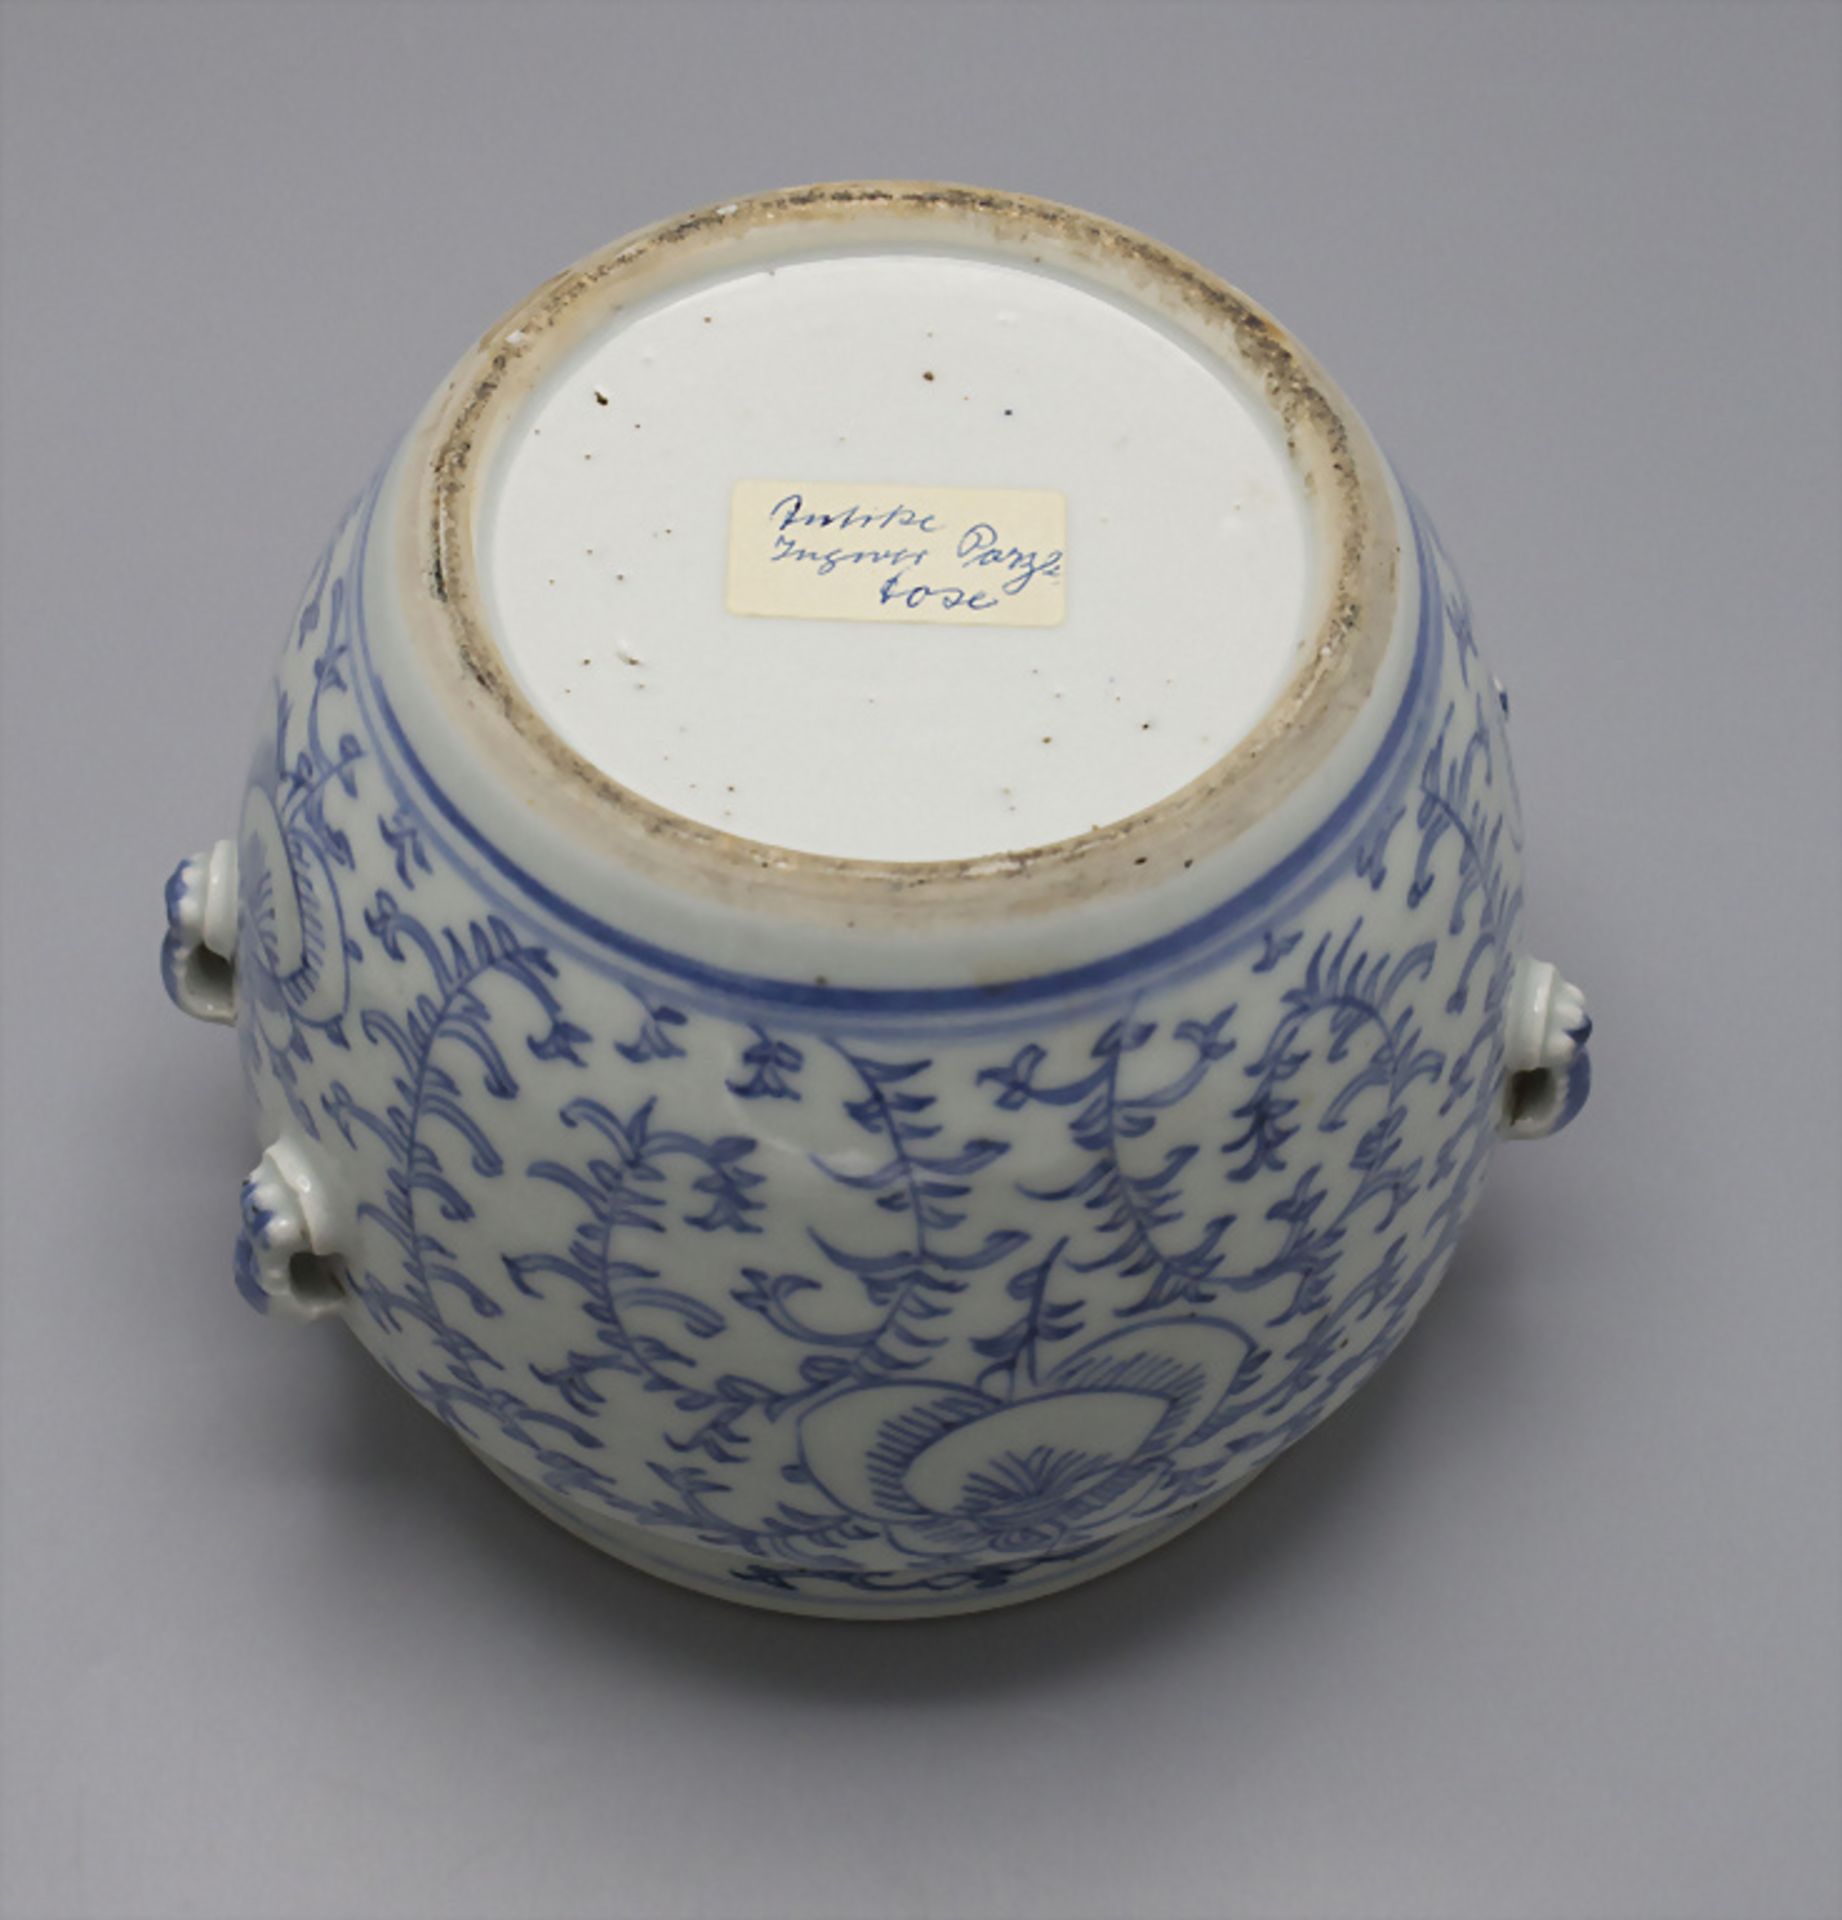 Porzellan Ingwertopf / A porcelain ginger pot, China - Image 6 of 6